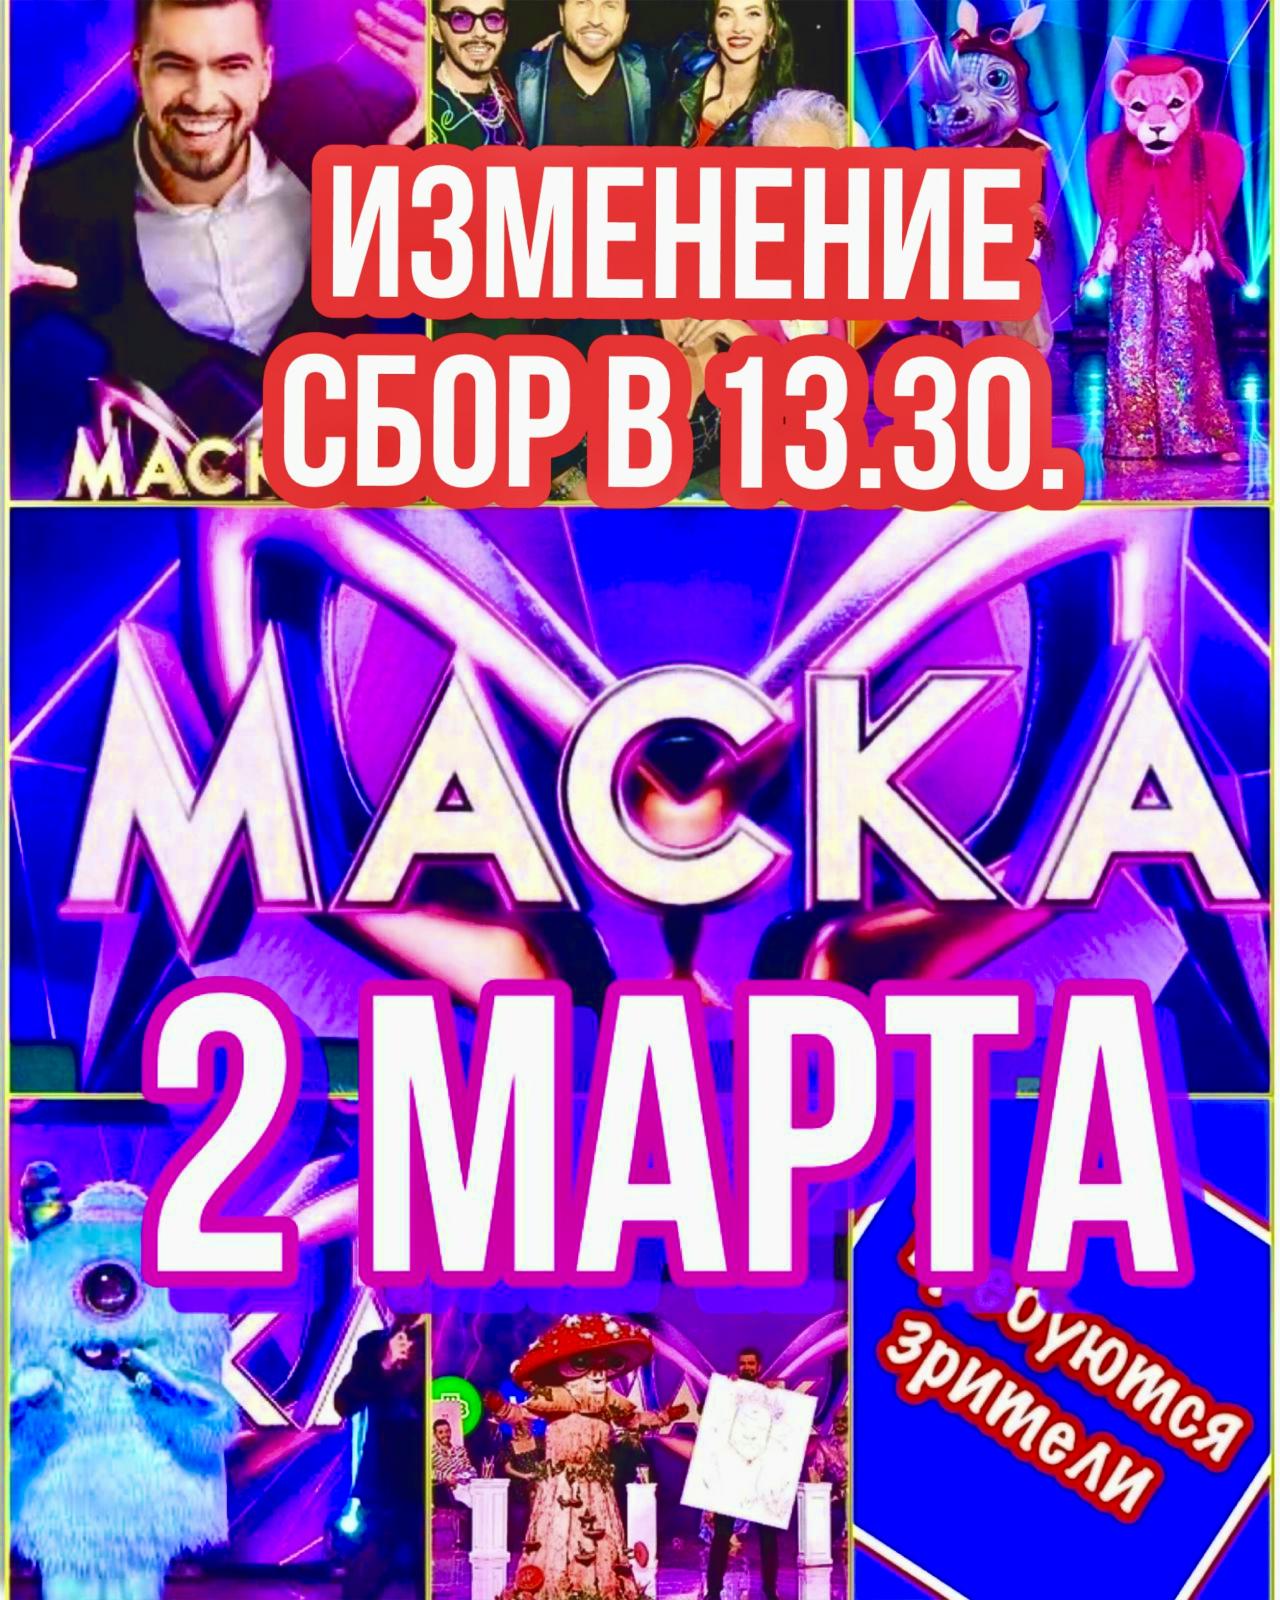 Зрители на съёмку популярного, музыкального шоу «МАСКА»- 2 марта